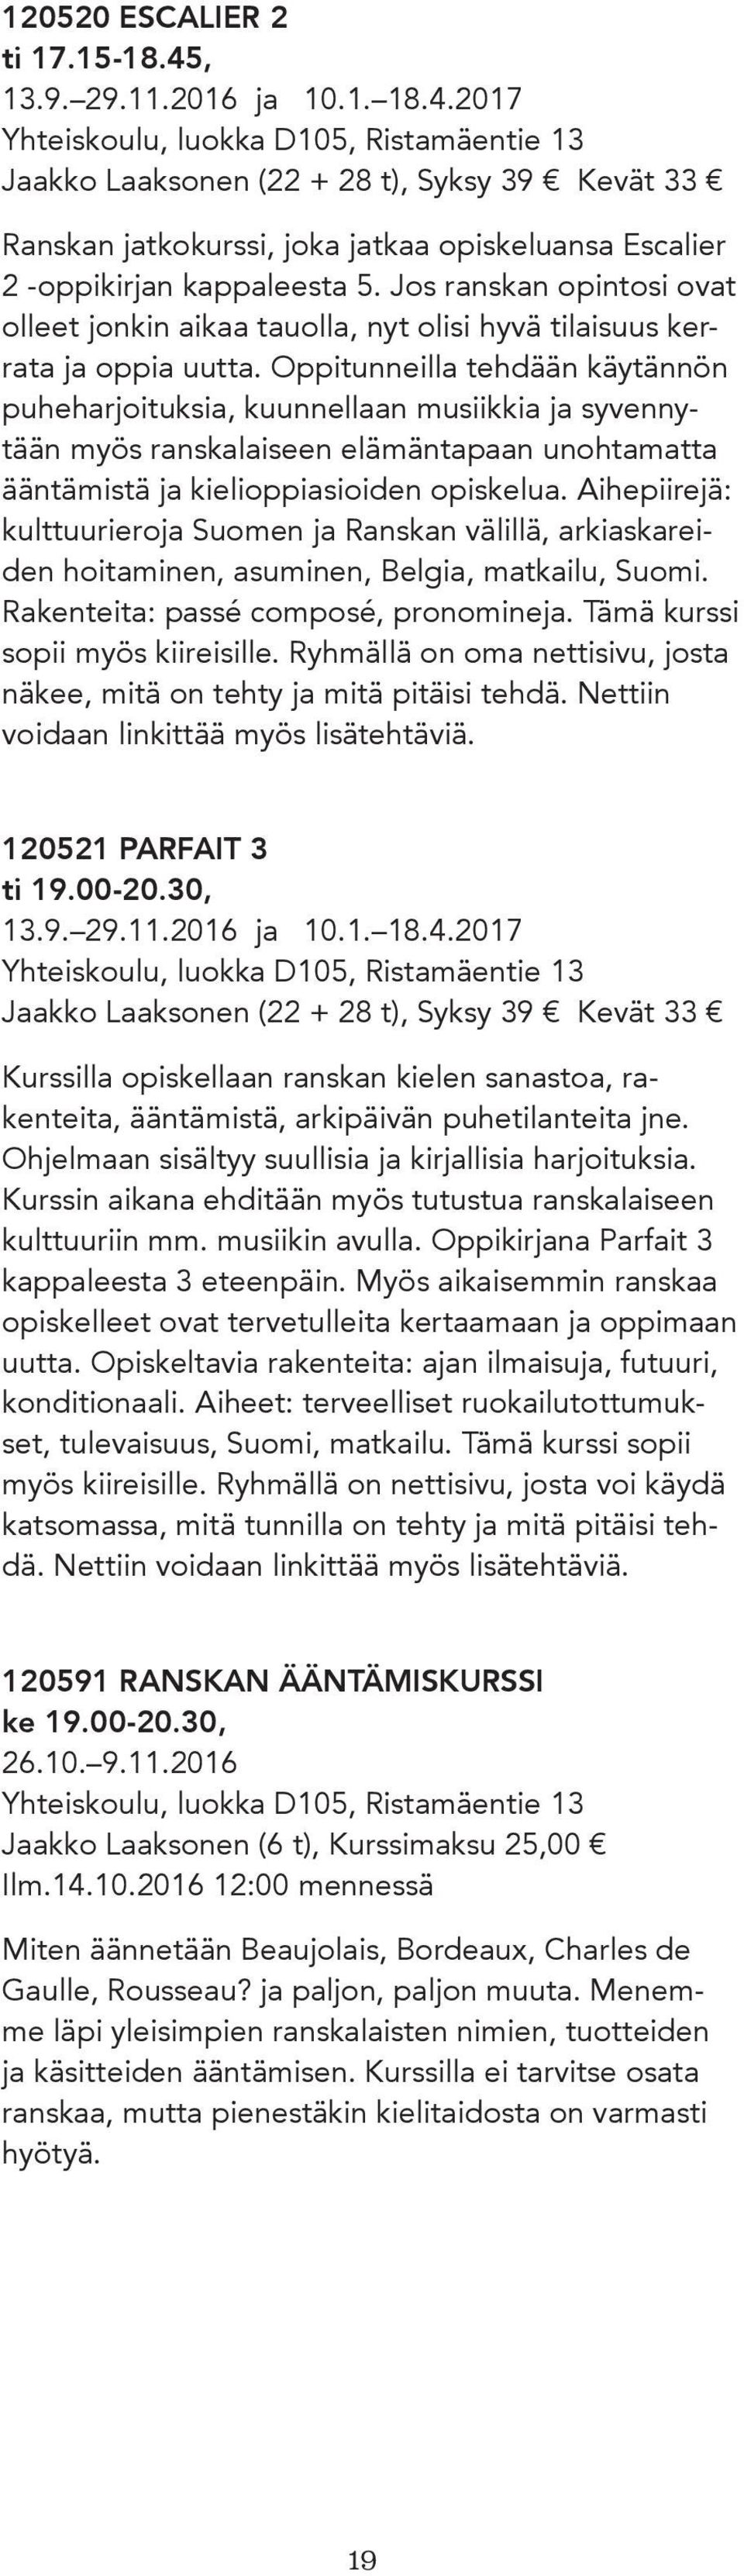 2017 Yhteiskoulu, luokka D105, Ristamäentie 13 Jaakko Laaksonen (22 + 28 t), Syksy 39 Kevät 33 Ranskan jatkokurssi, joka jatkaa opiskeluansa Escalier 2 -oppikirjan kappaleesta 5.